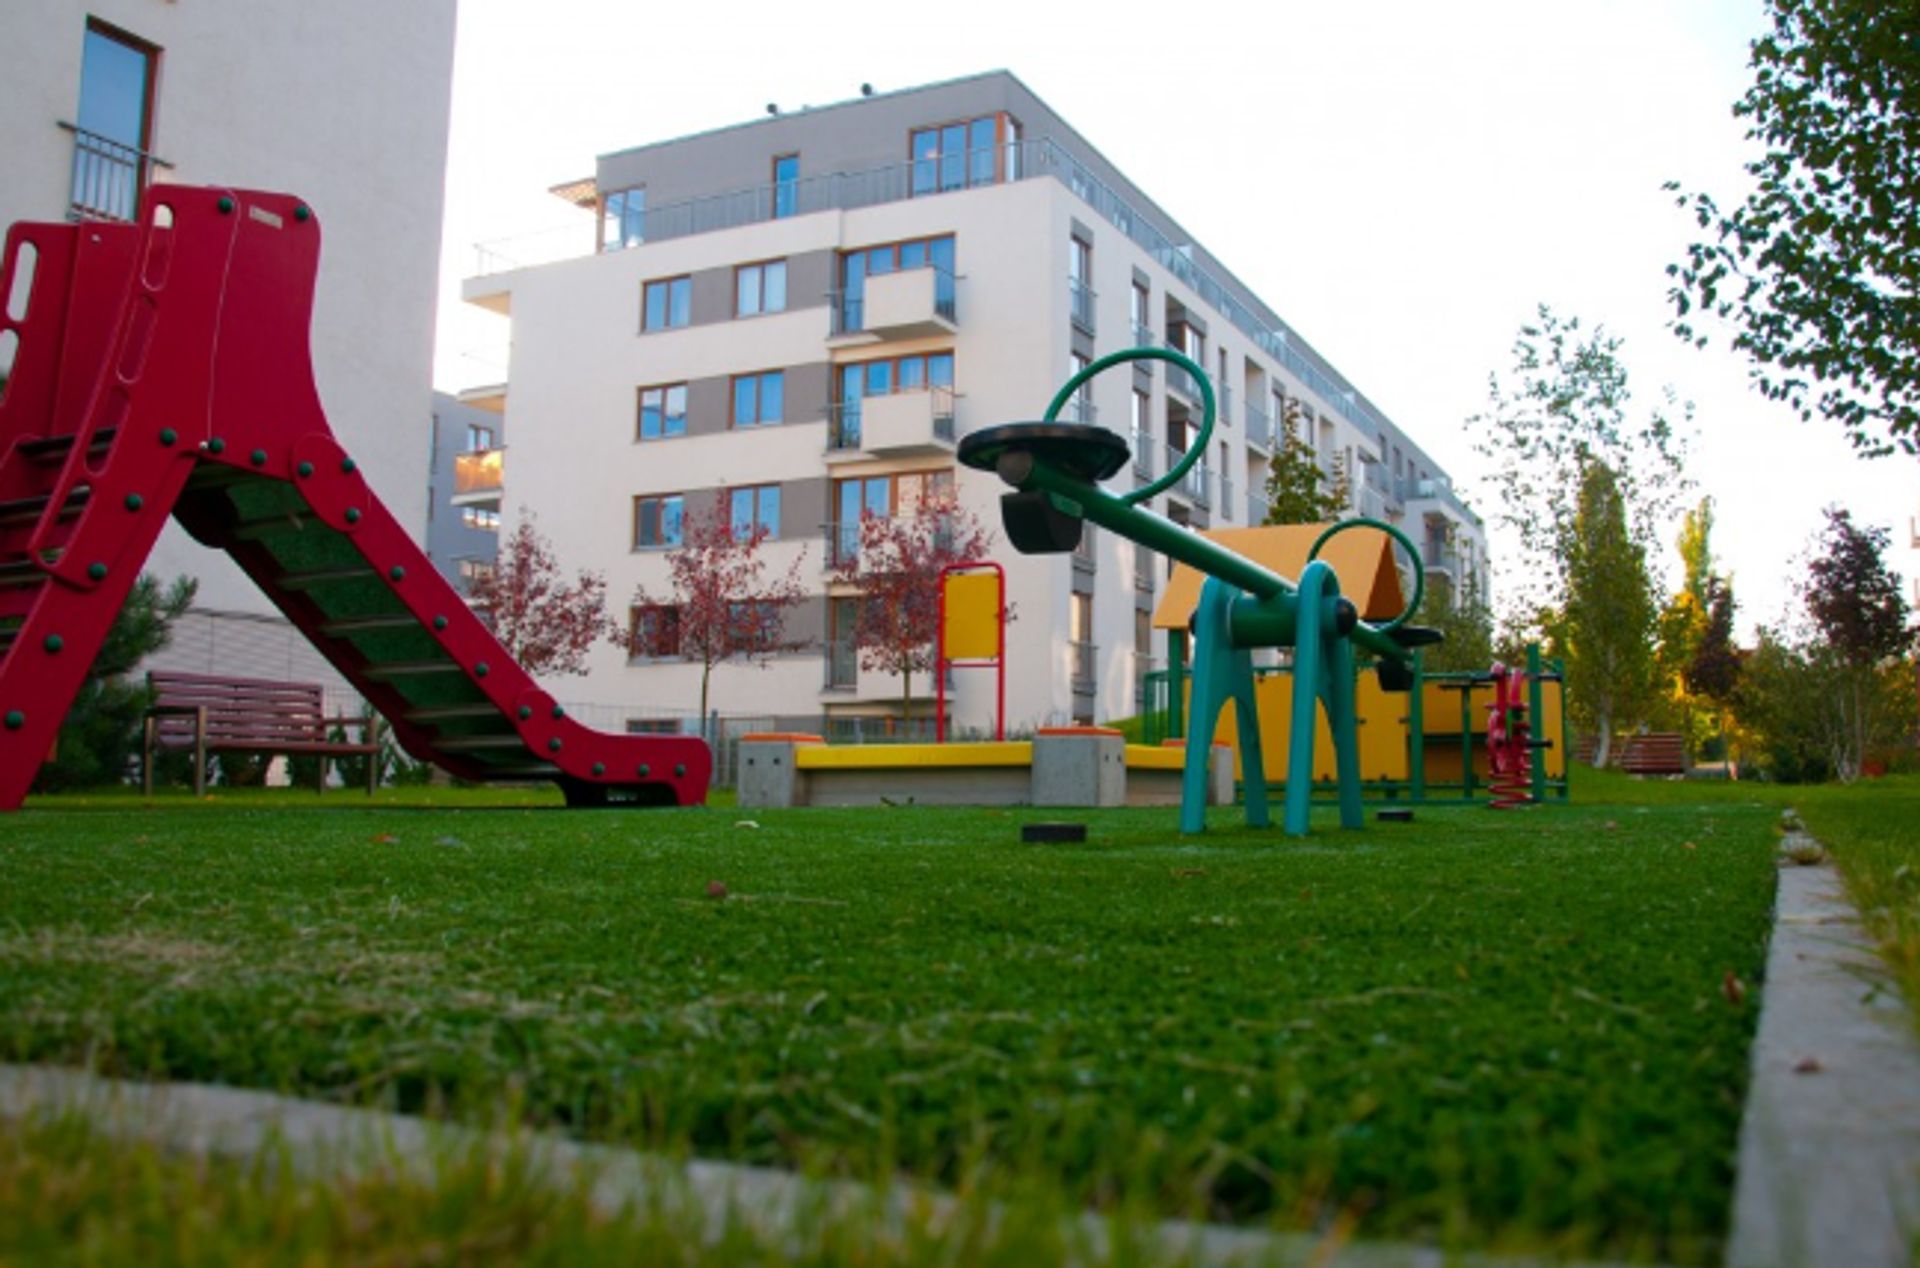  Jesienią poznańskie dzielnice kwitną od nowych inwestycji mieszkaniowych